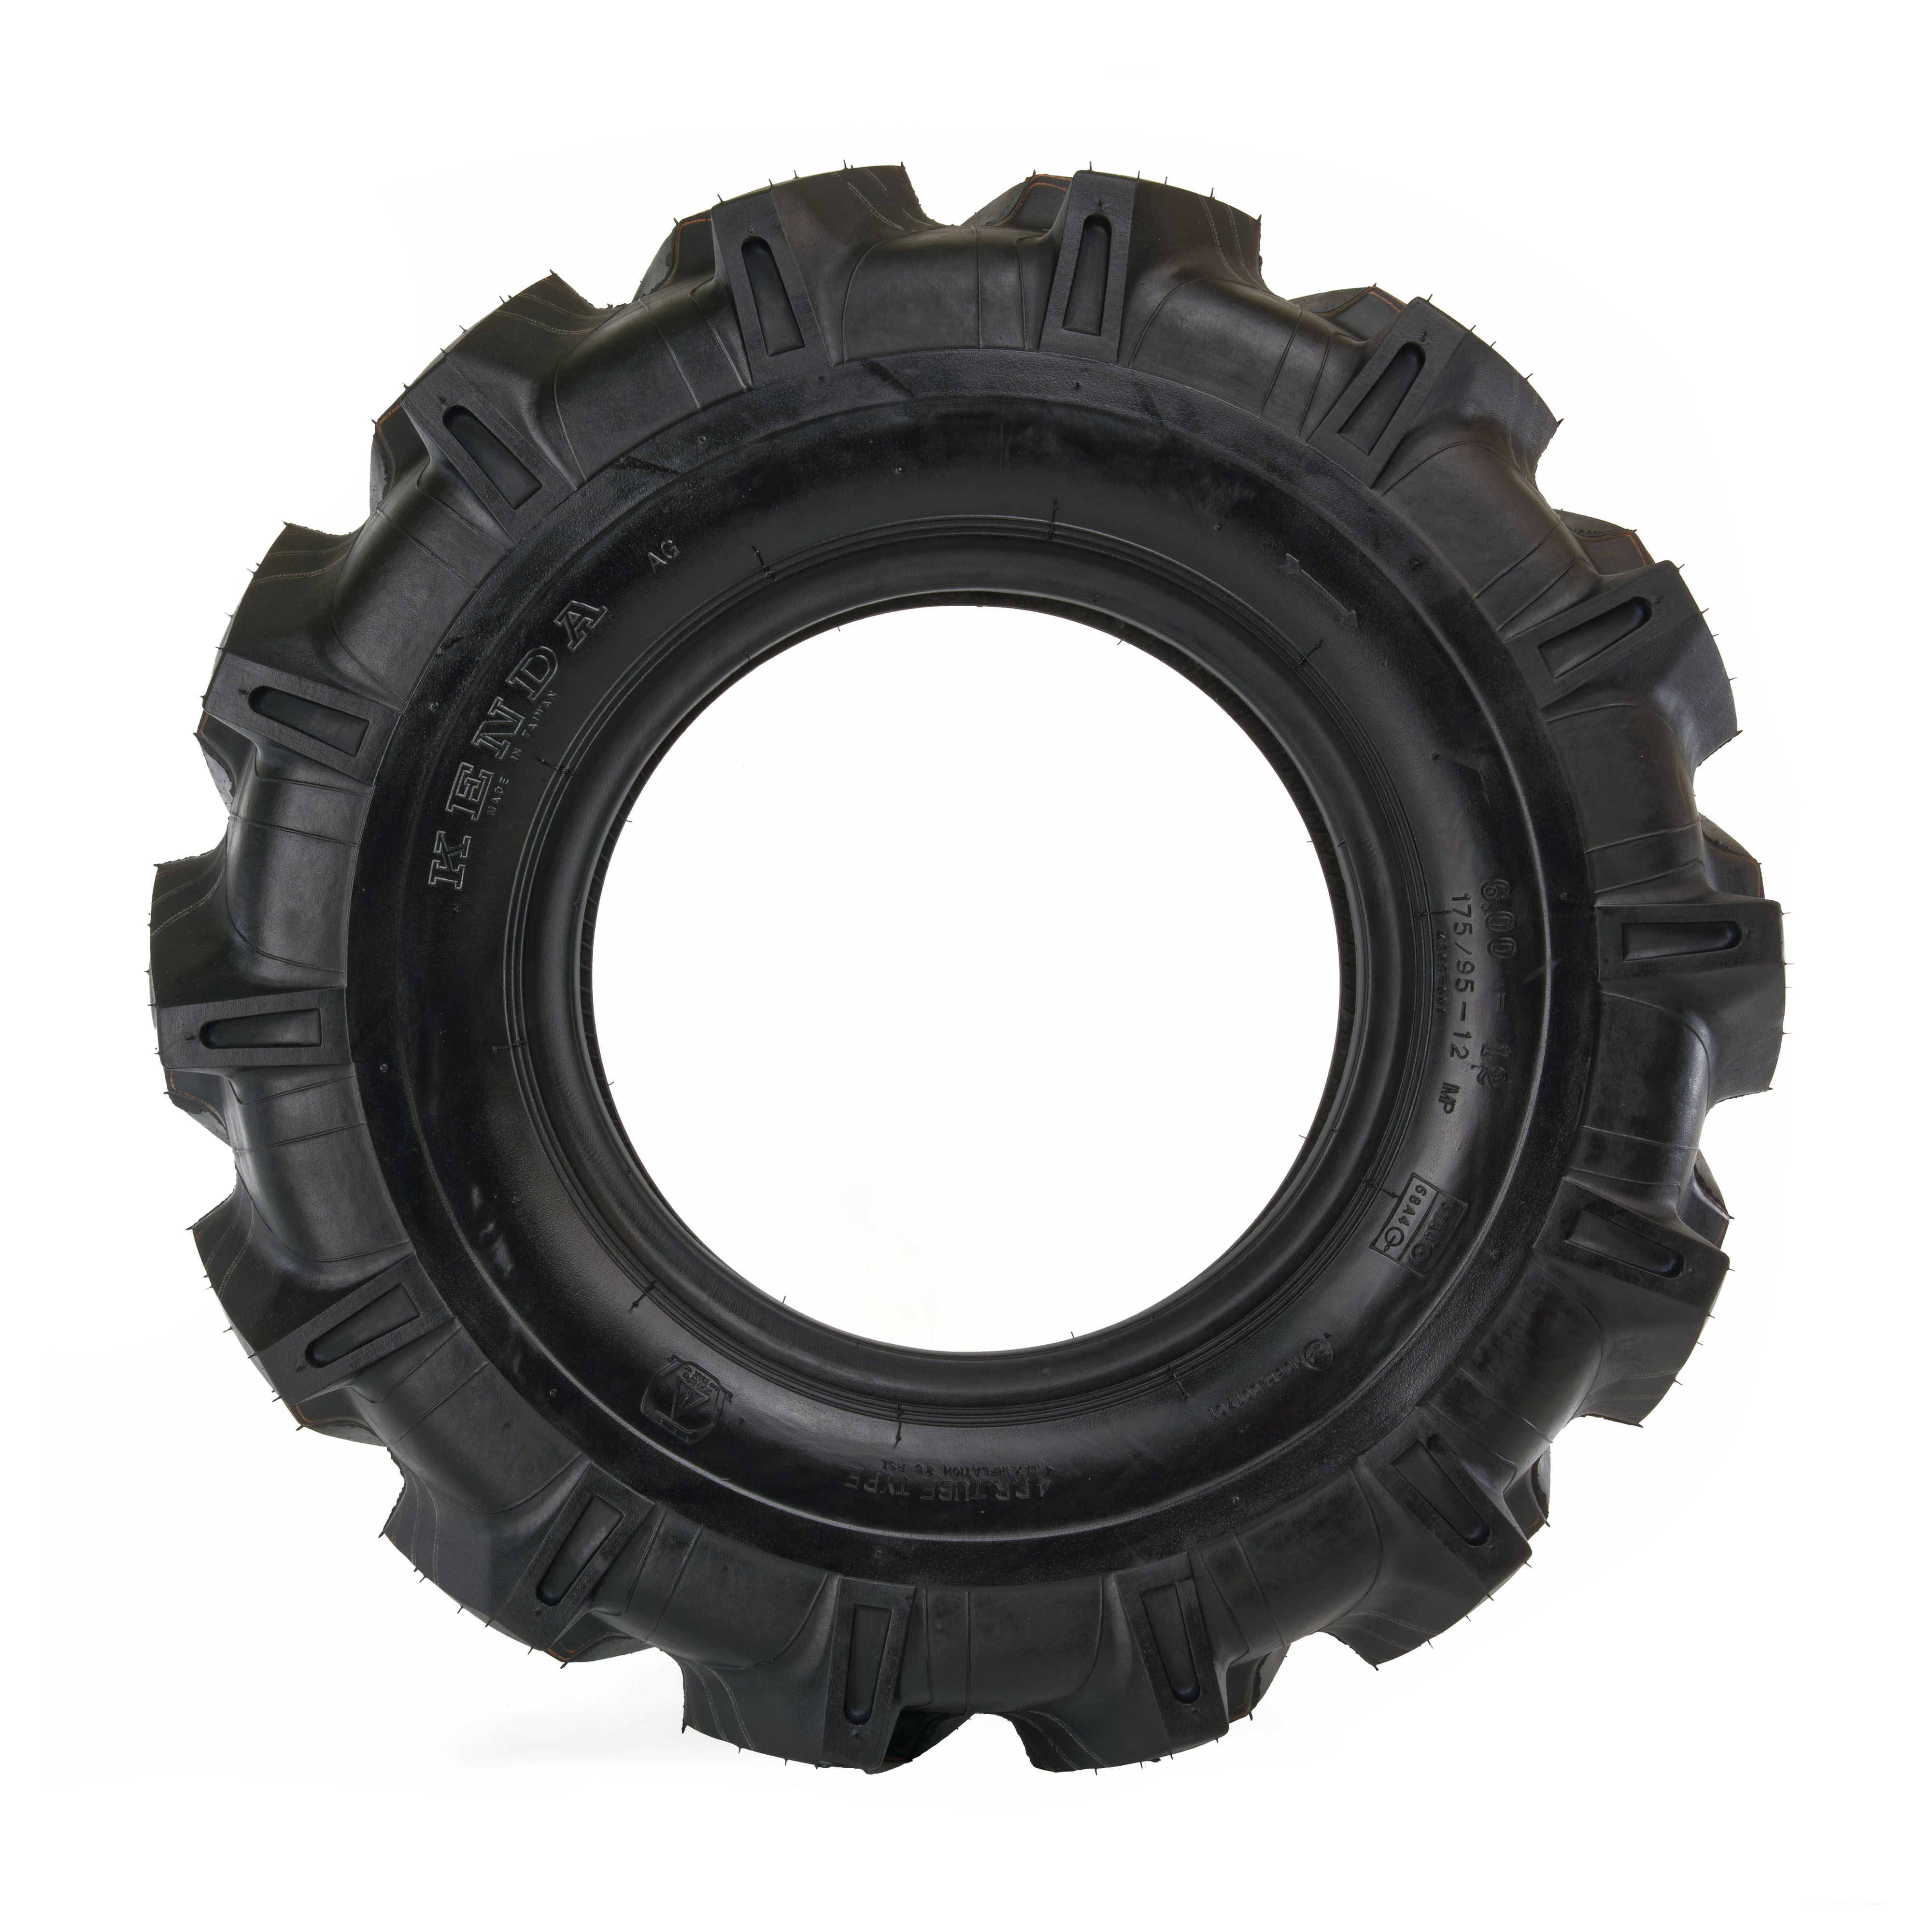 Reifen für Einachstraktor 6.00-12, 4PR, Kenda K365, AS - Seitenansicht